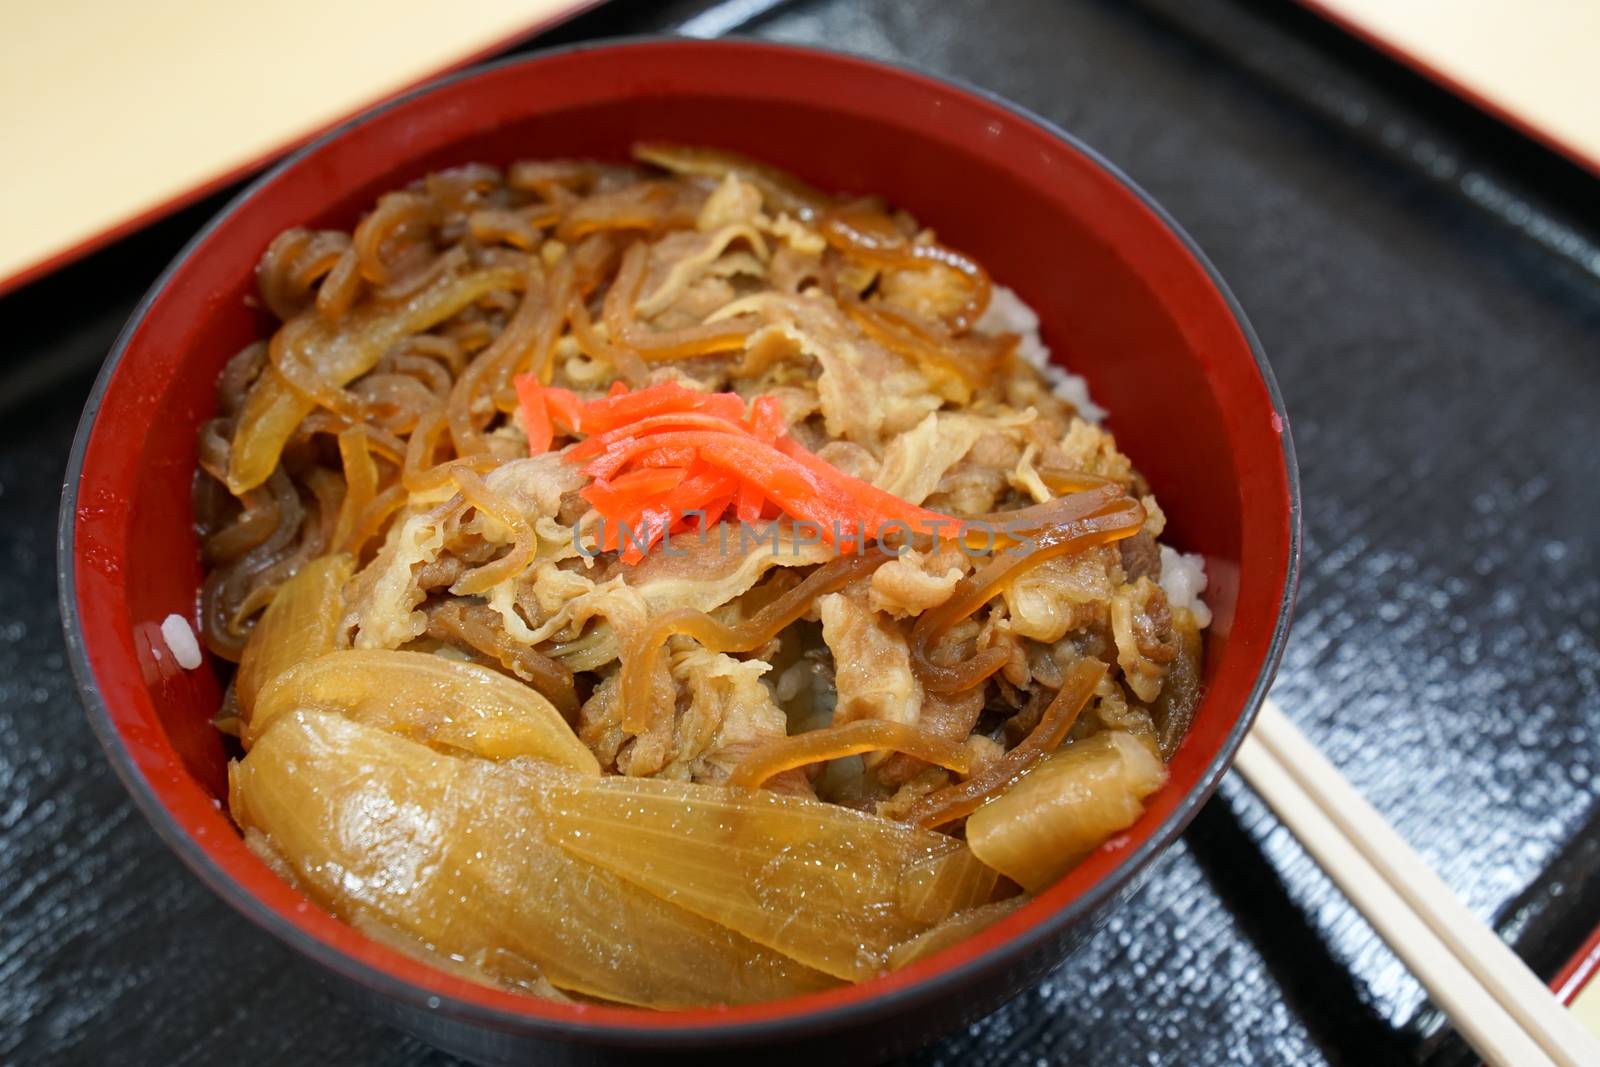 Japanese beef in rice bowl, Yoshinoya Japanese food